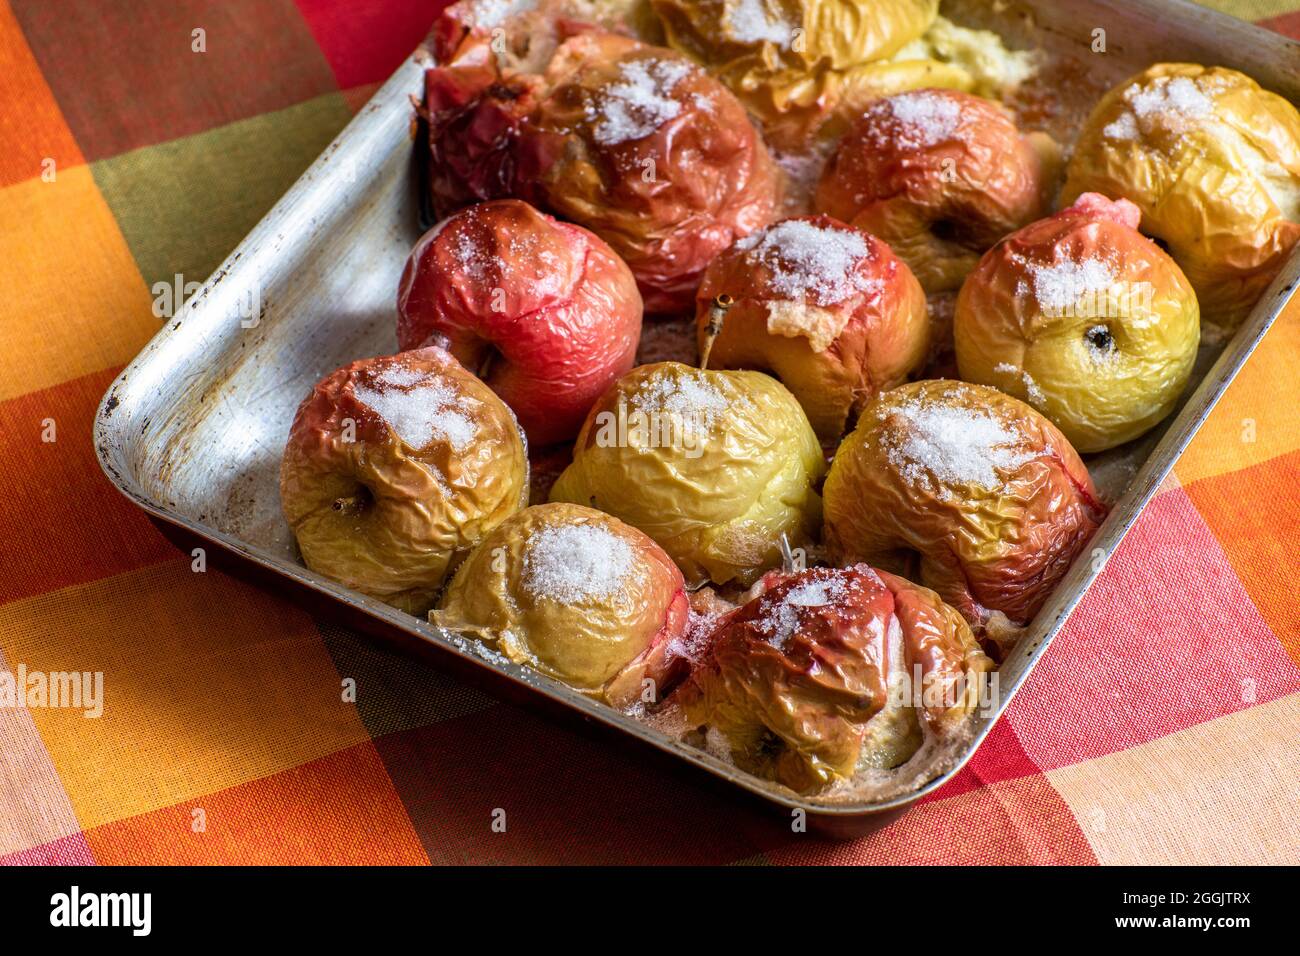 Im Ofen gebackene Äpfel mit Zucker Stockfotografie - Alamy